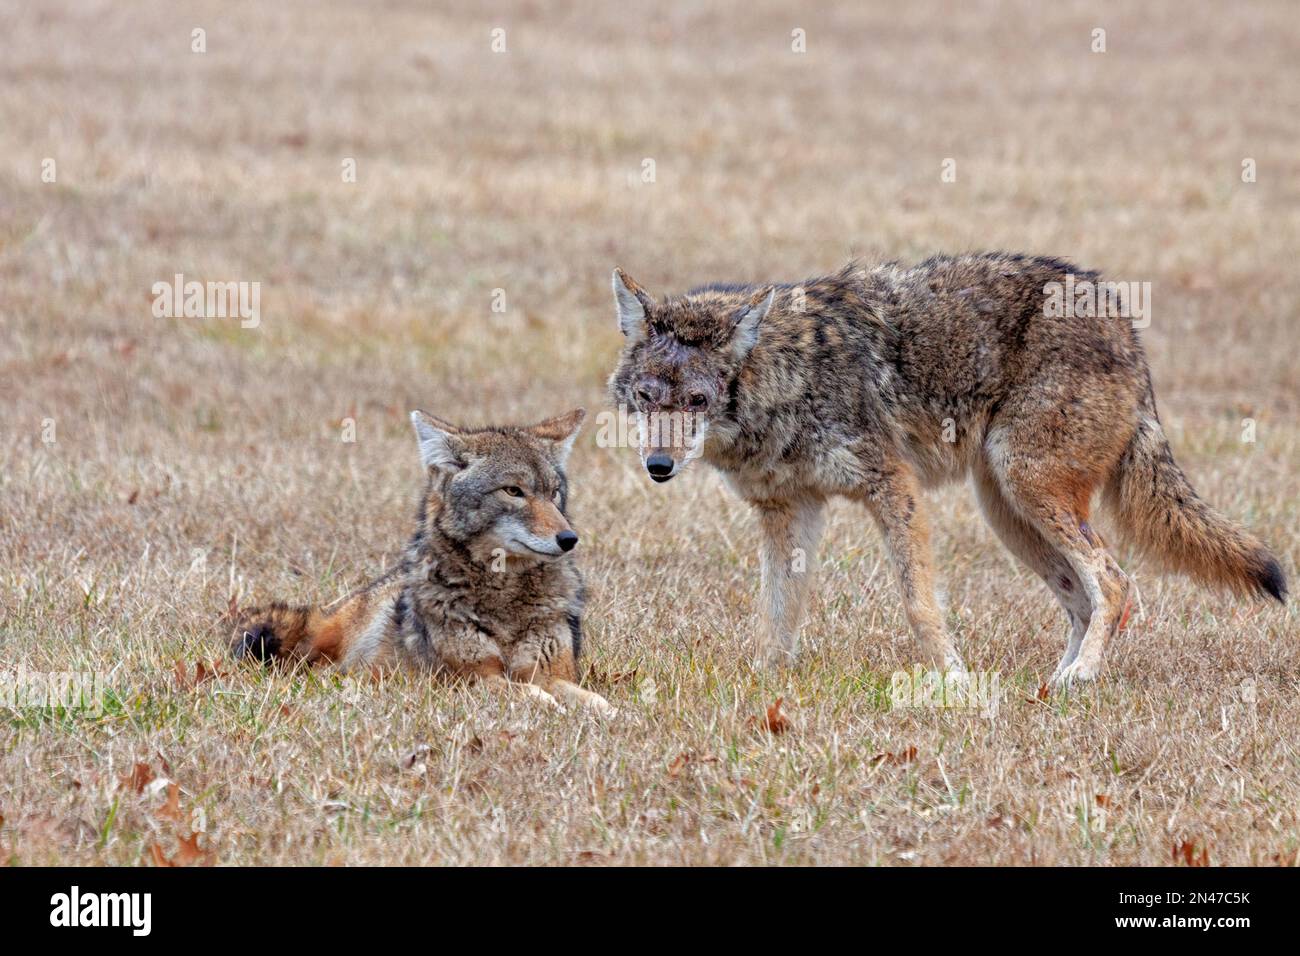 Un coyote garde sur un autre coyote qui est posé sur l'herbe. Les deux coyotes regardent la caméra. Banque D'Images